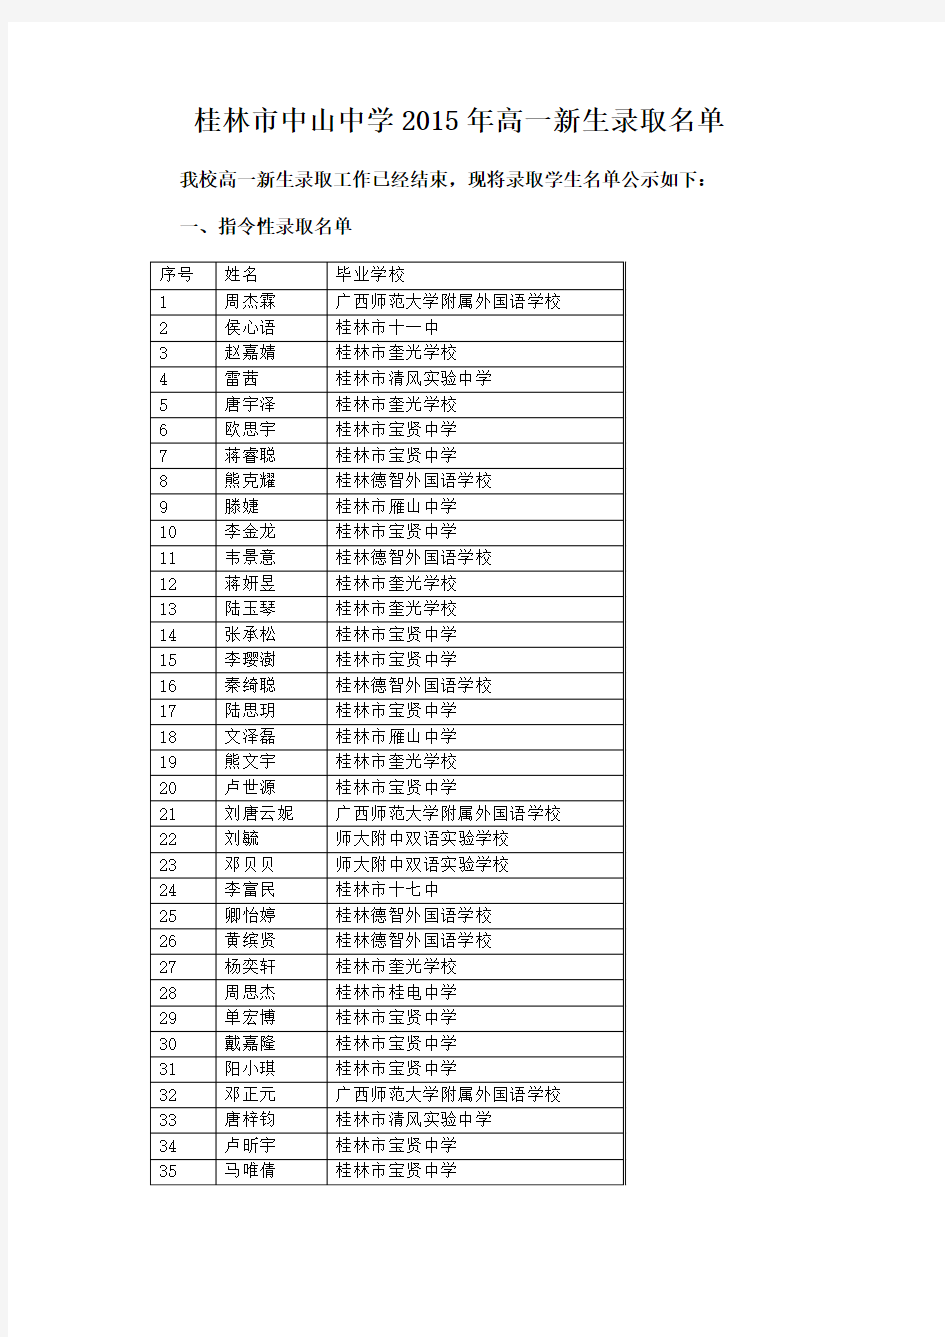 桂林市中山中学2015年高一新生录取名单